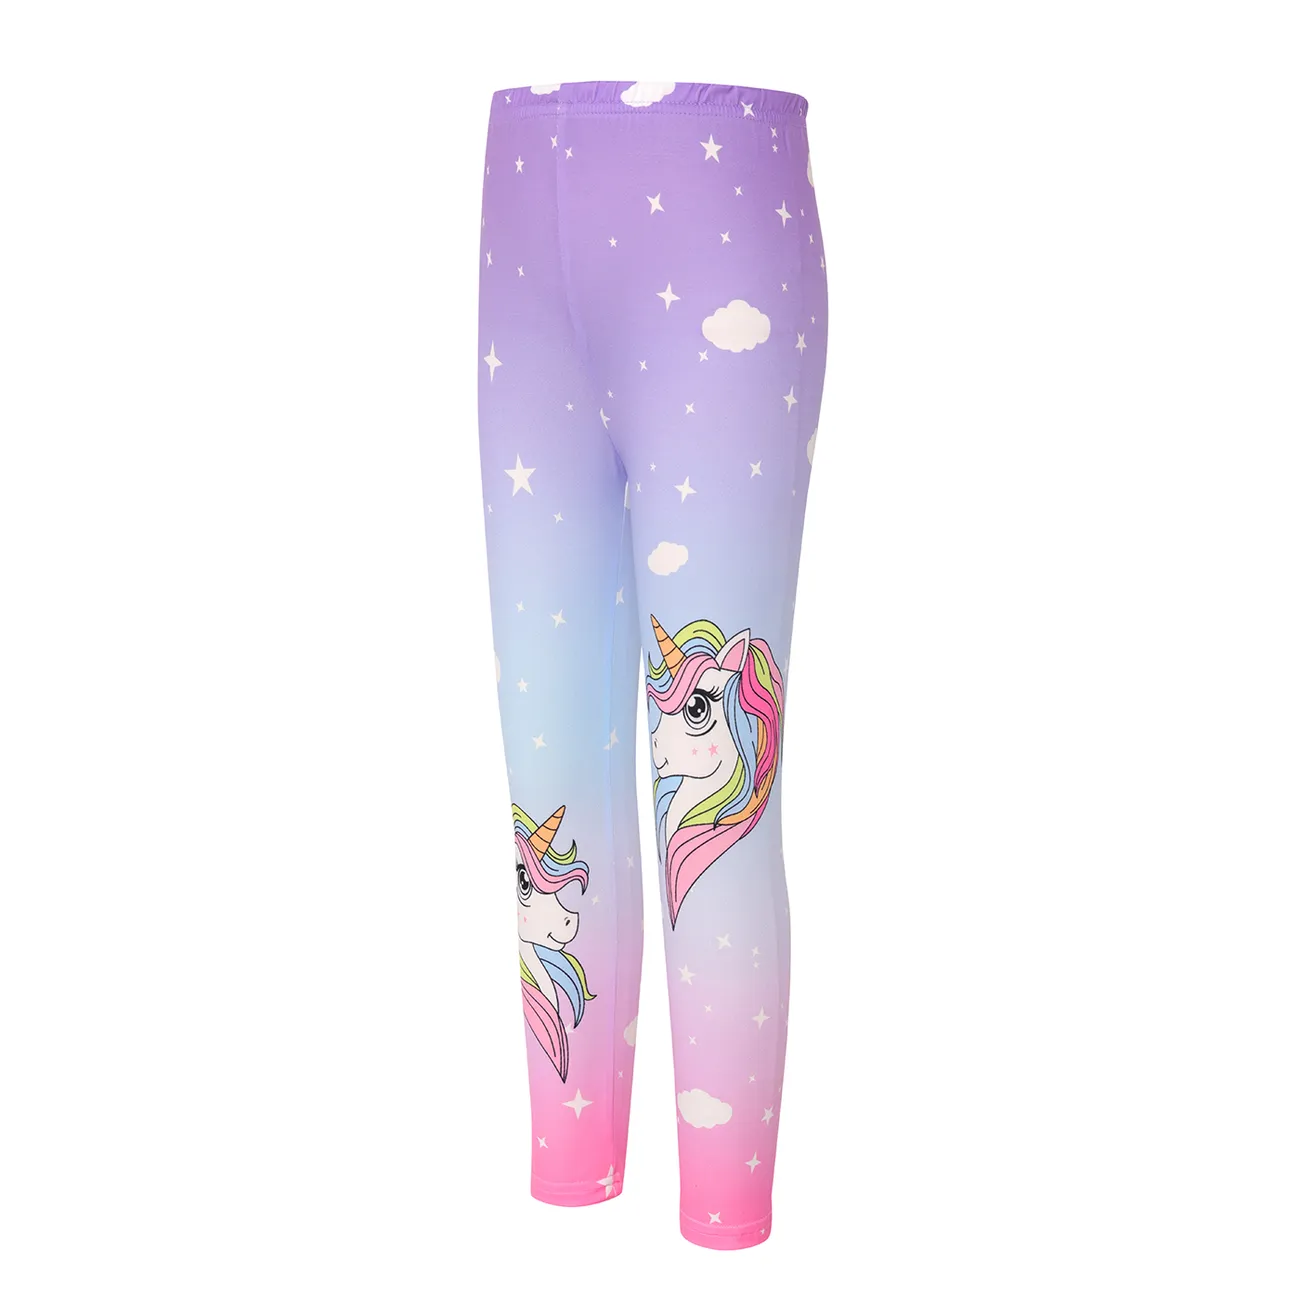 leggins elastizados con bloques de colores y estampado de unicornios para niñas Multicolor big image 1